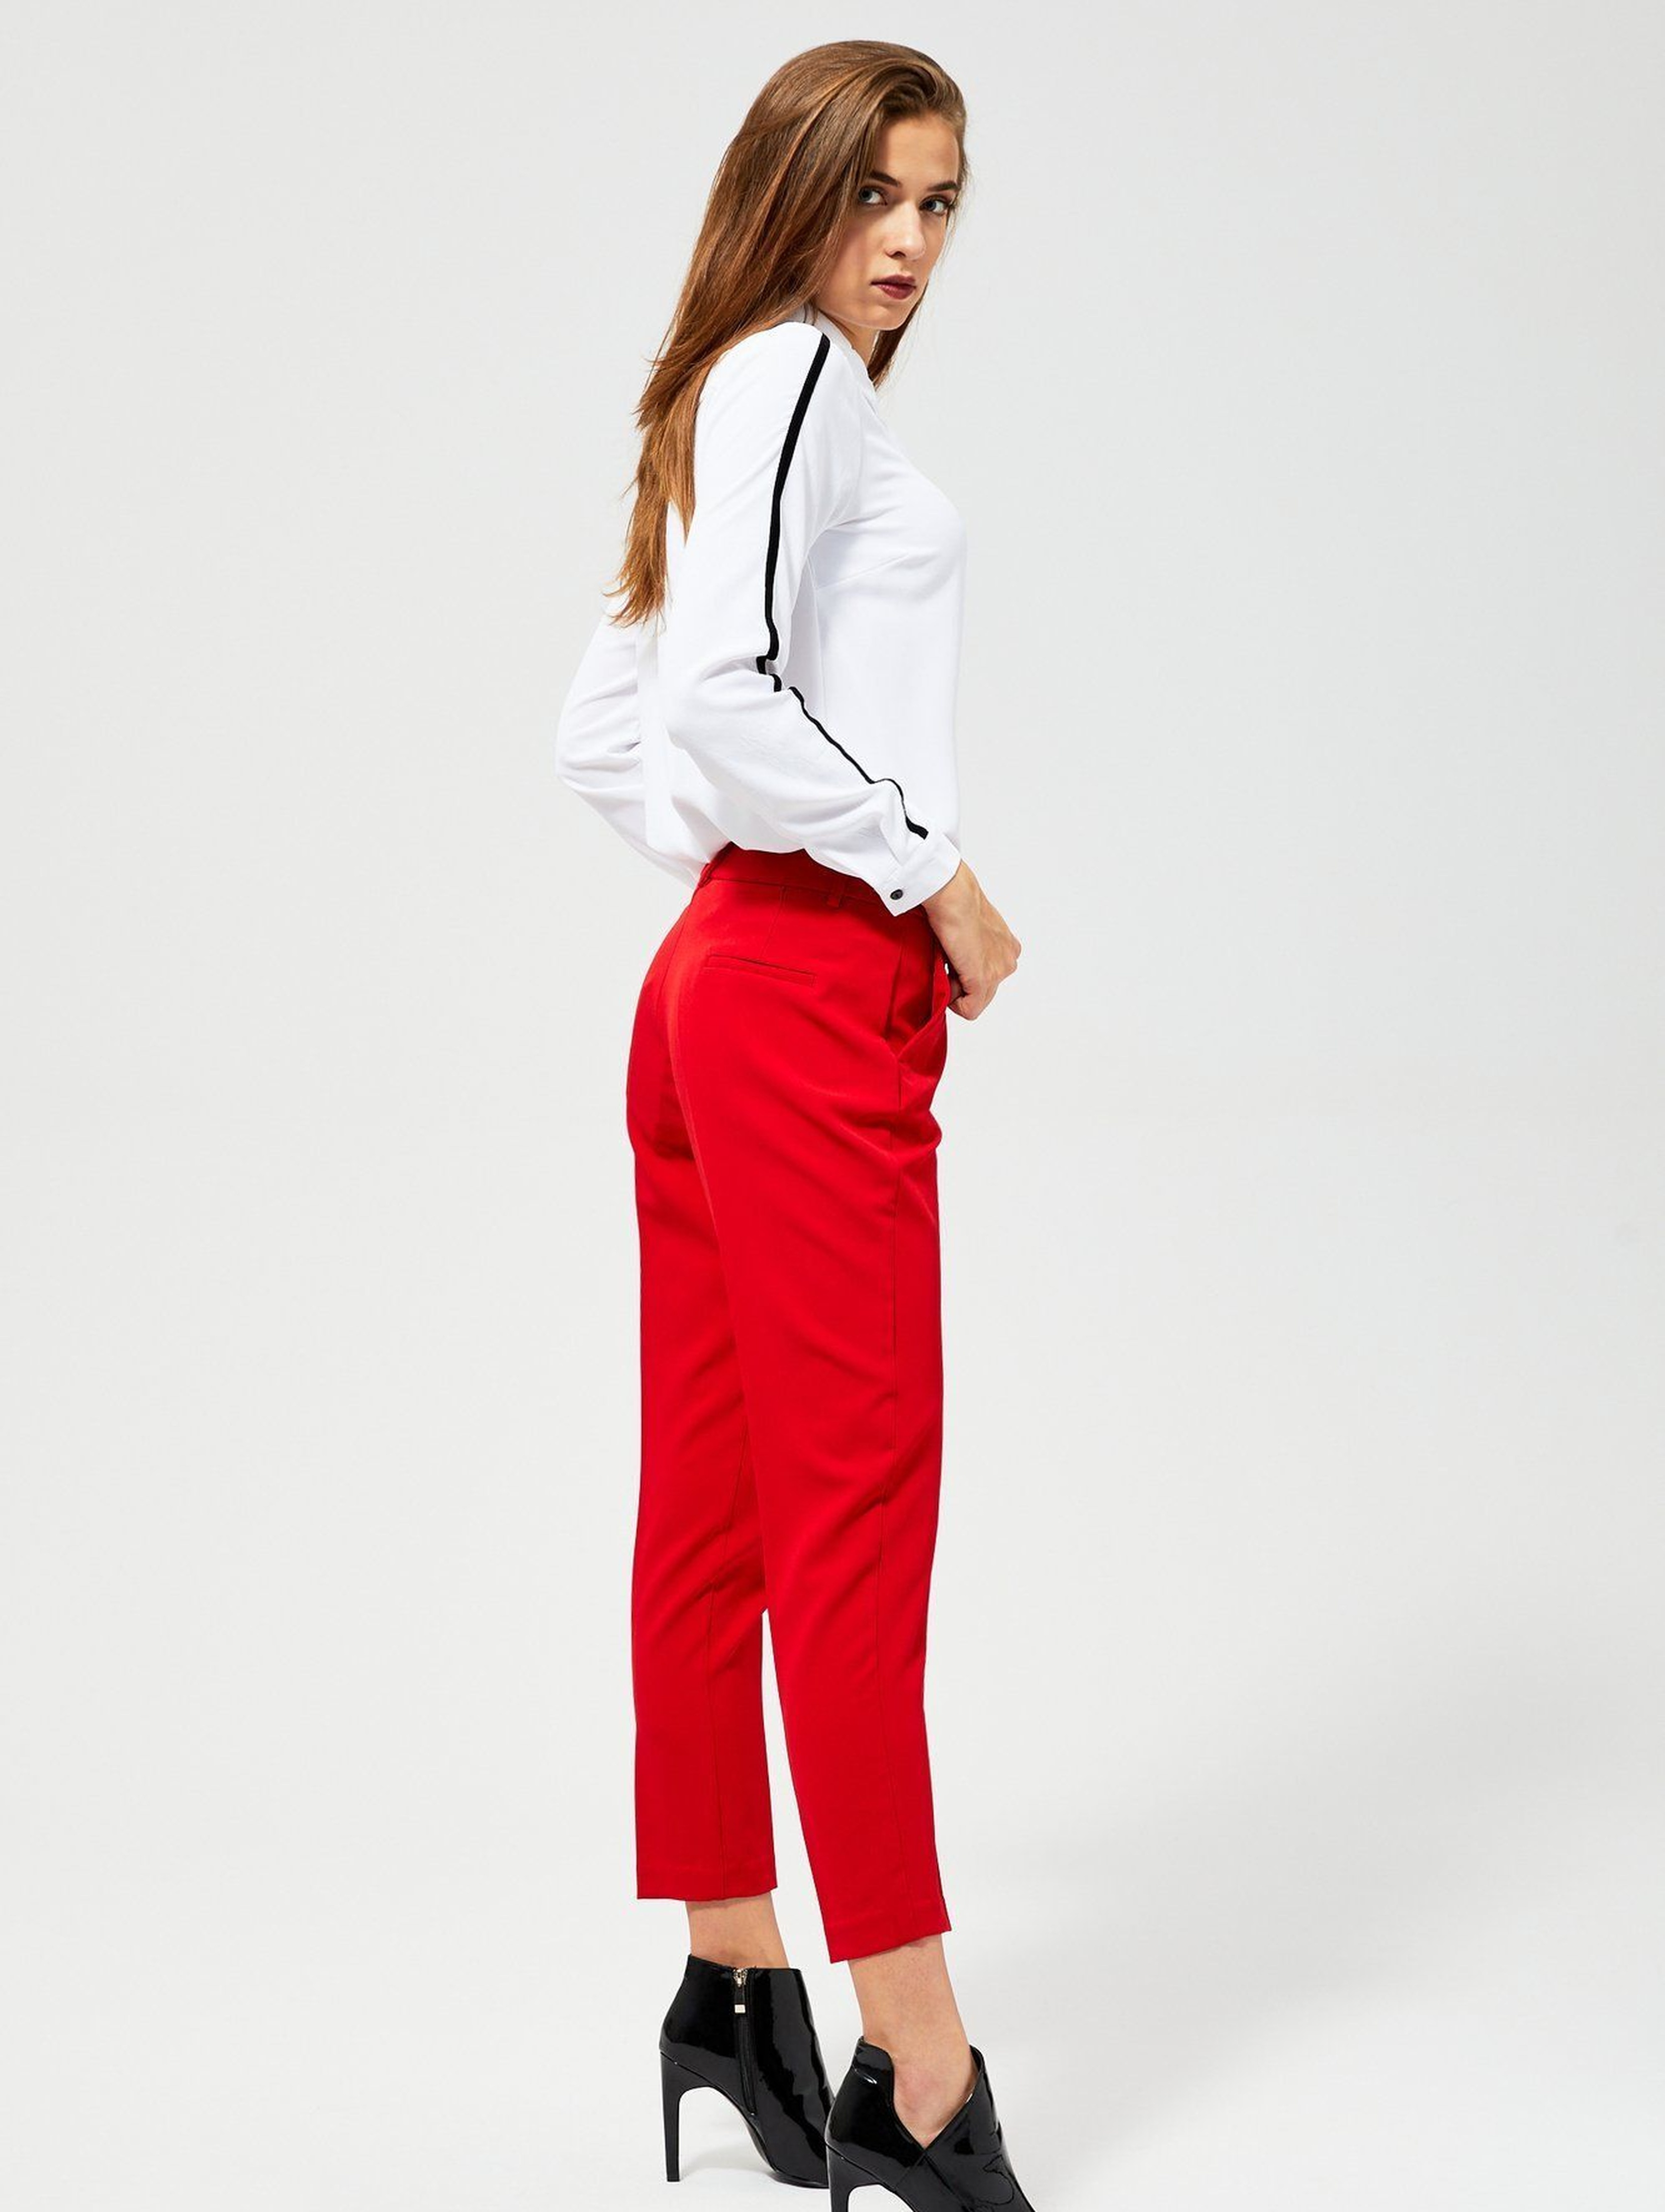 Spodnie damskie - czerwone w kant